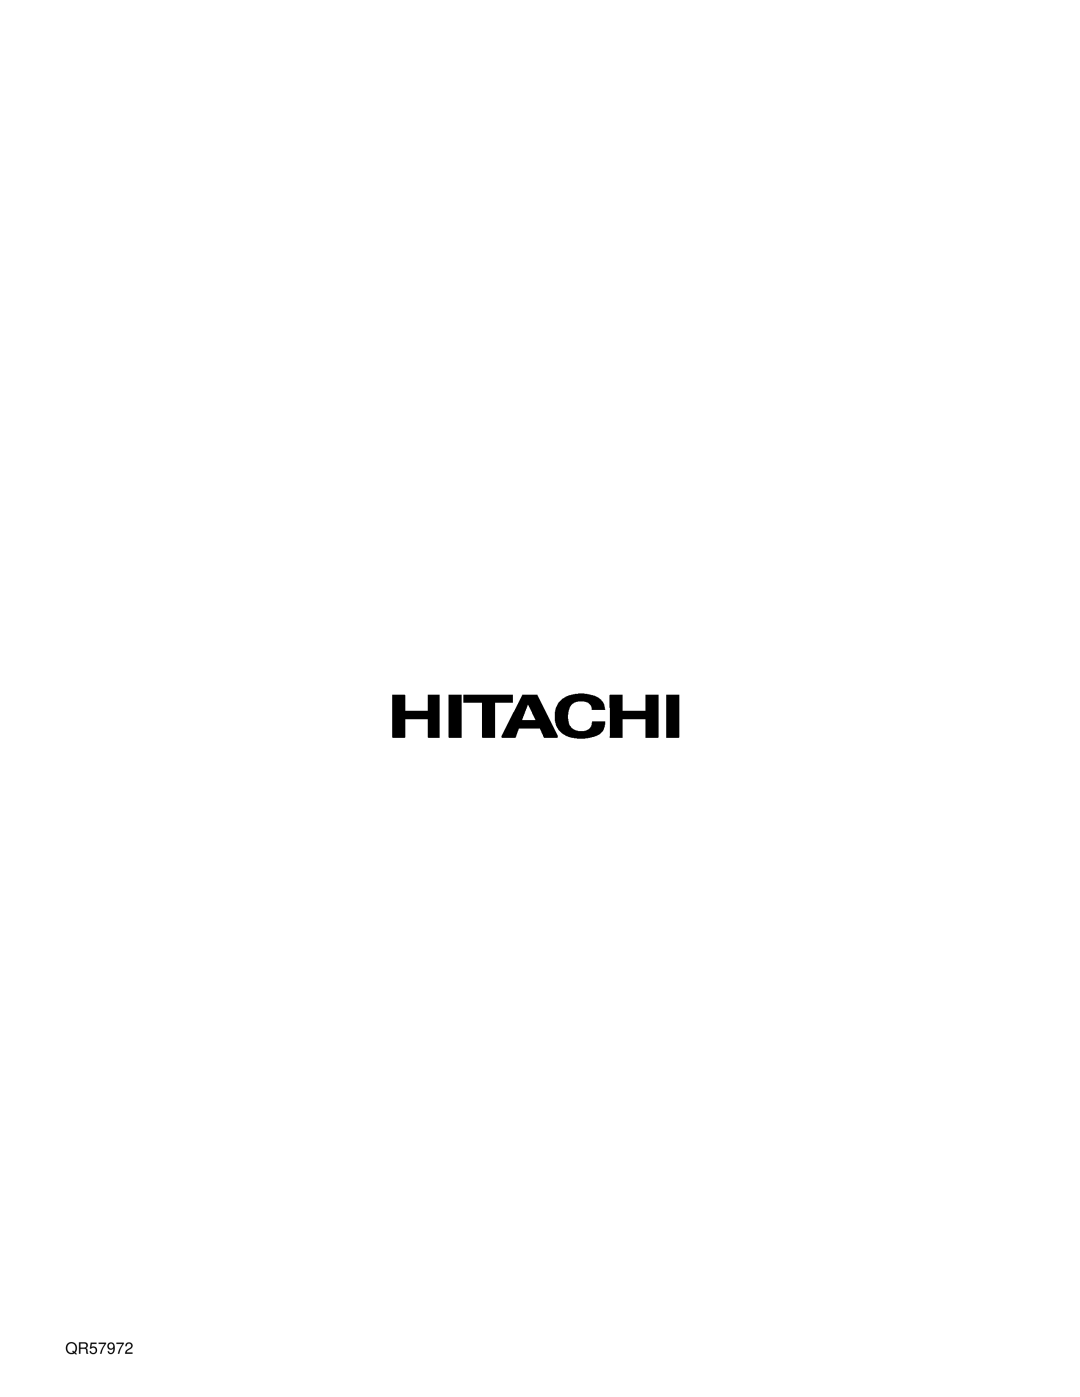 Hitachi 32HDX60 important safety instructions QR57972 